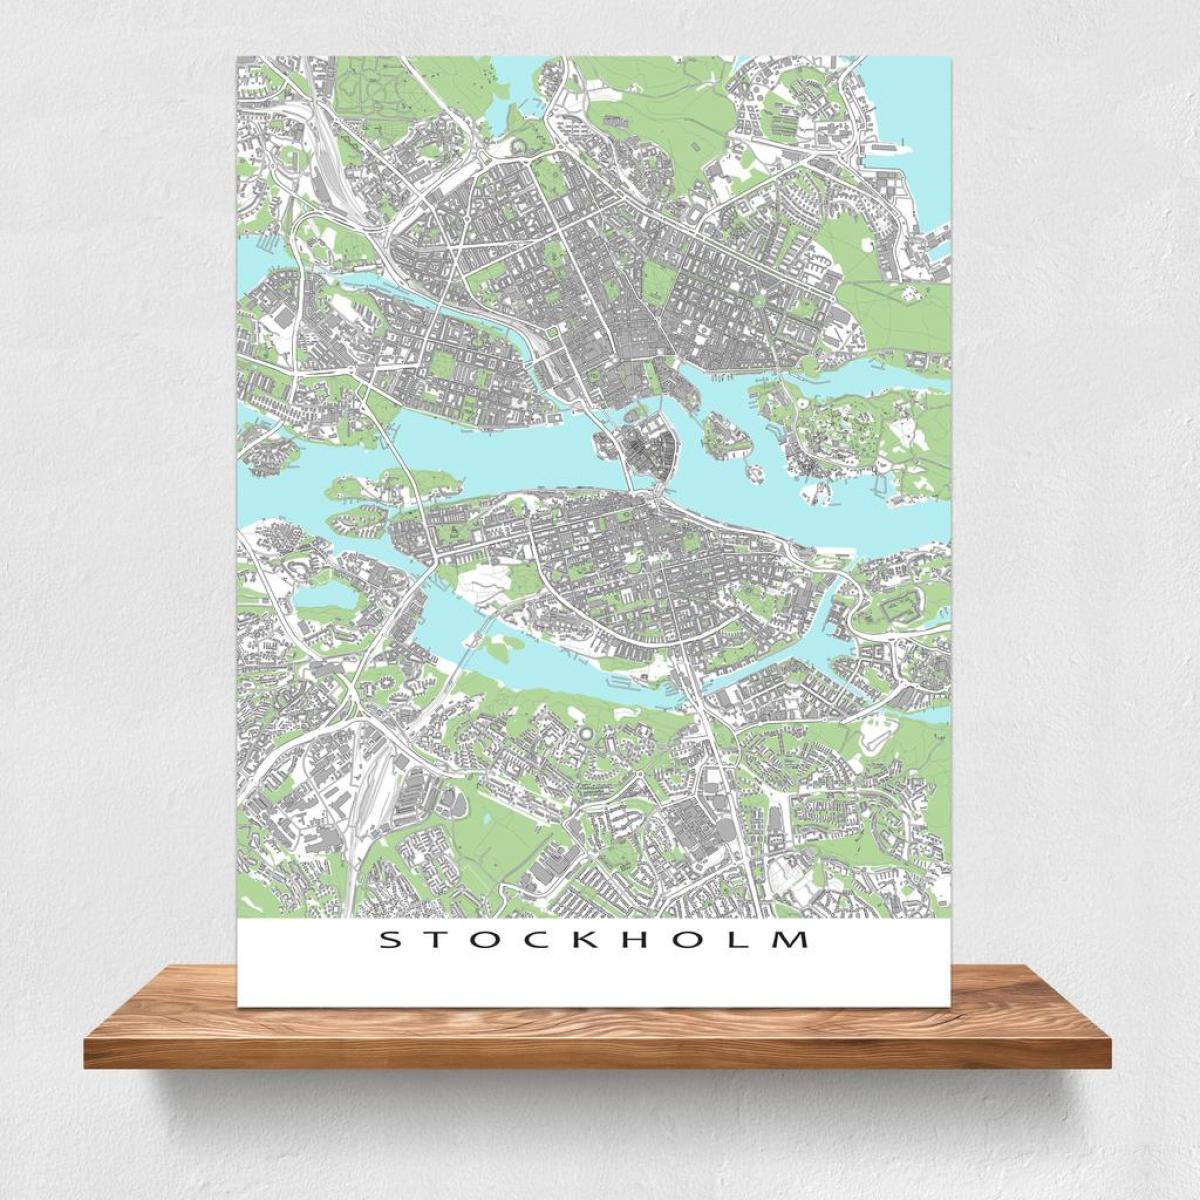 kort over Stockholm kort udskriv